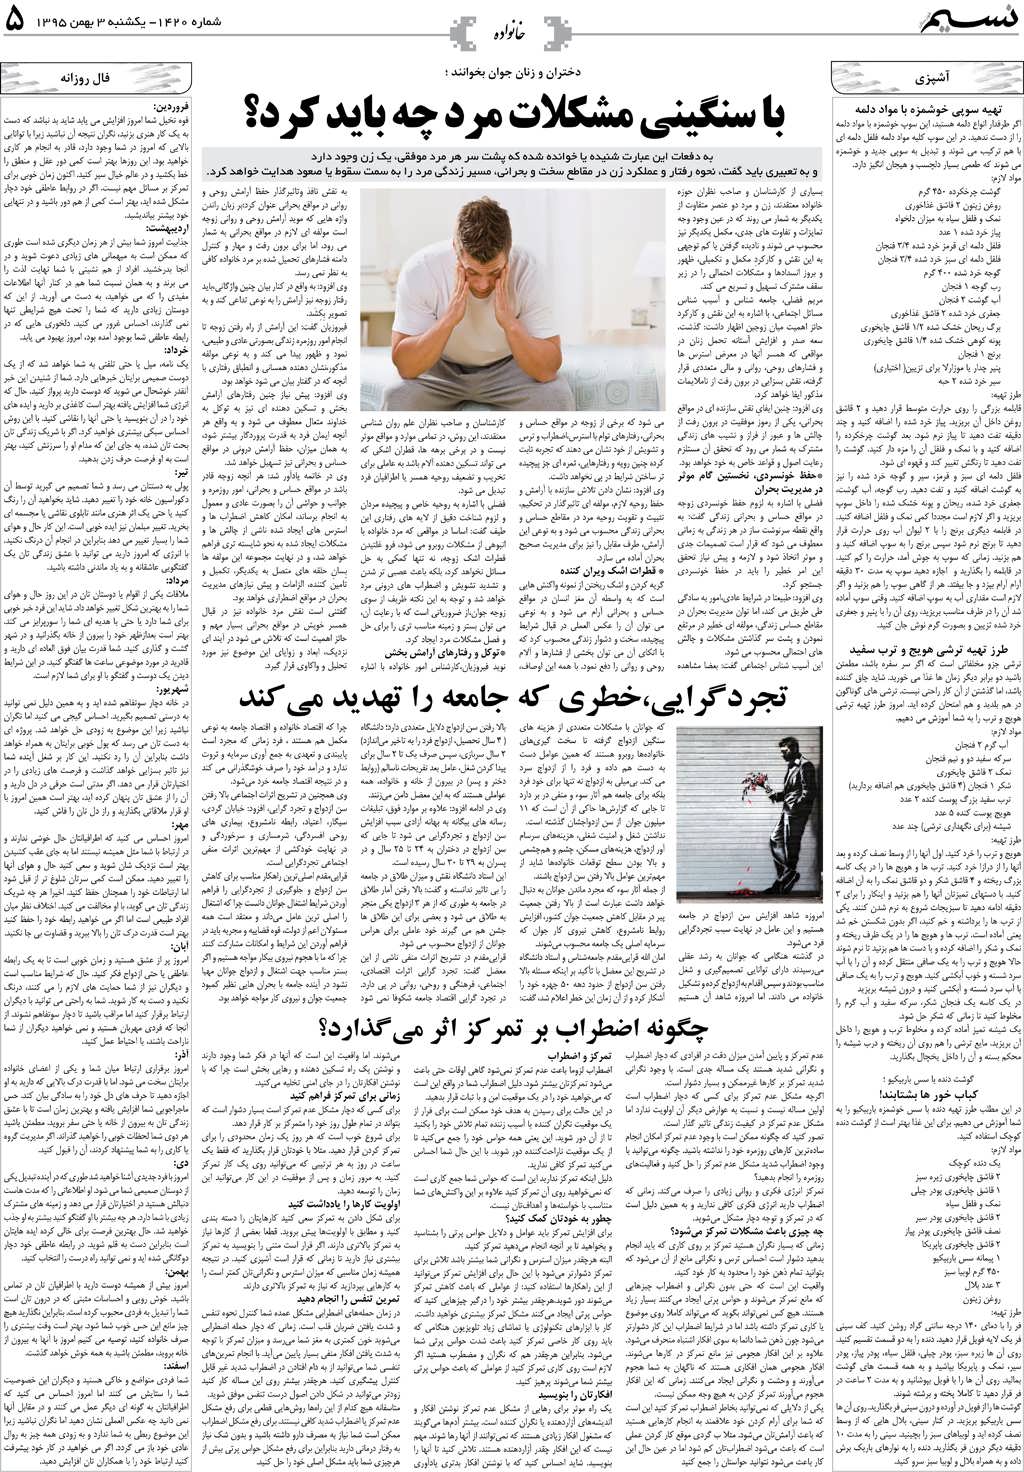 صفحه خانواده روزنامه نسیم شماره 1420